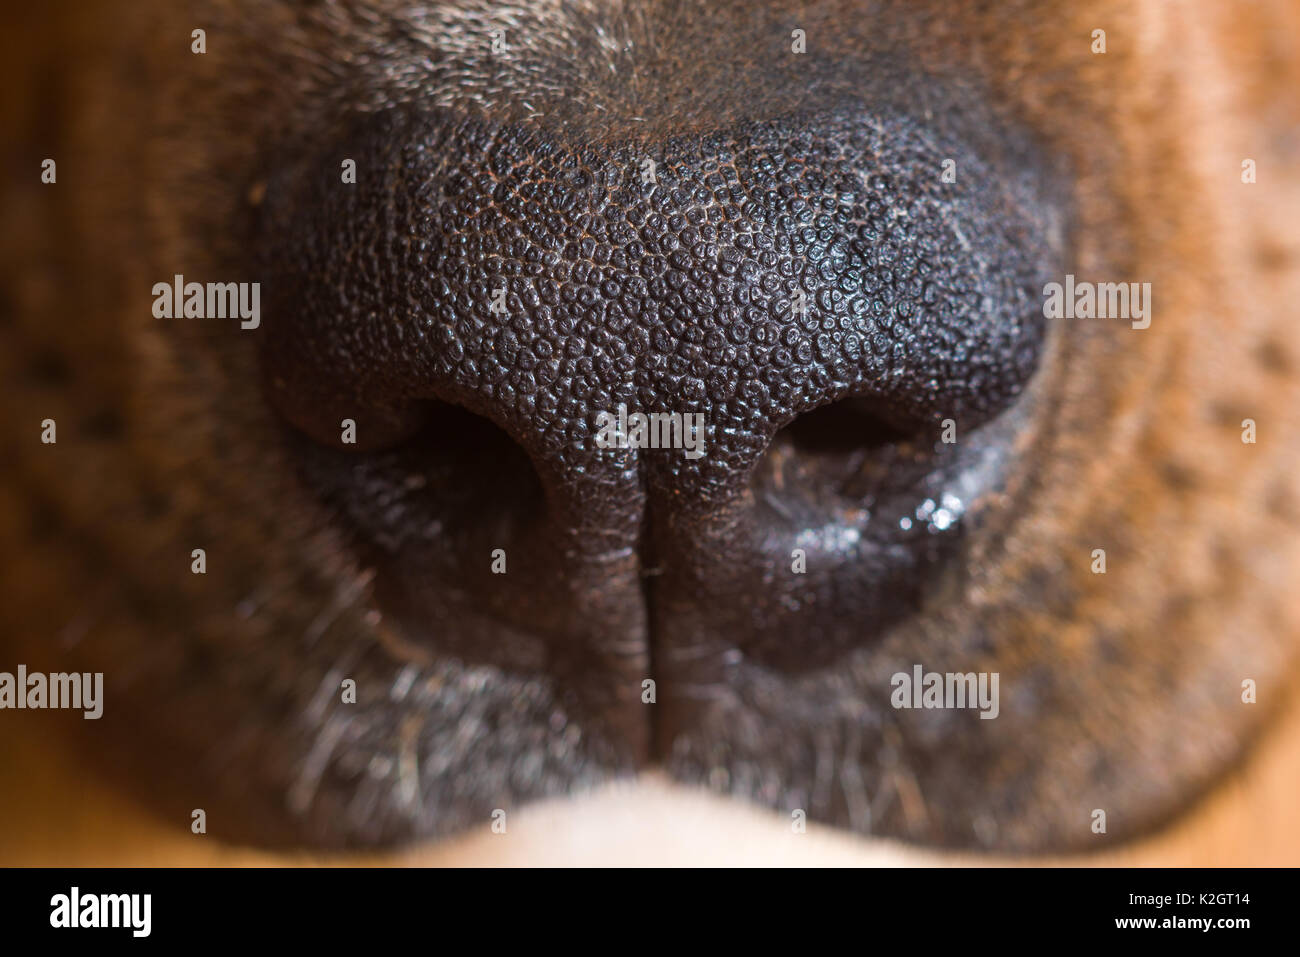 Dog nose close up Stock Photo